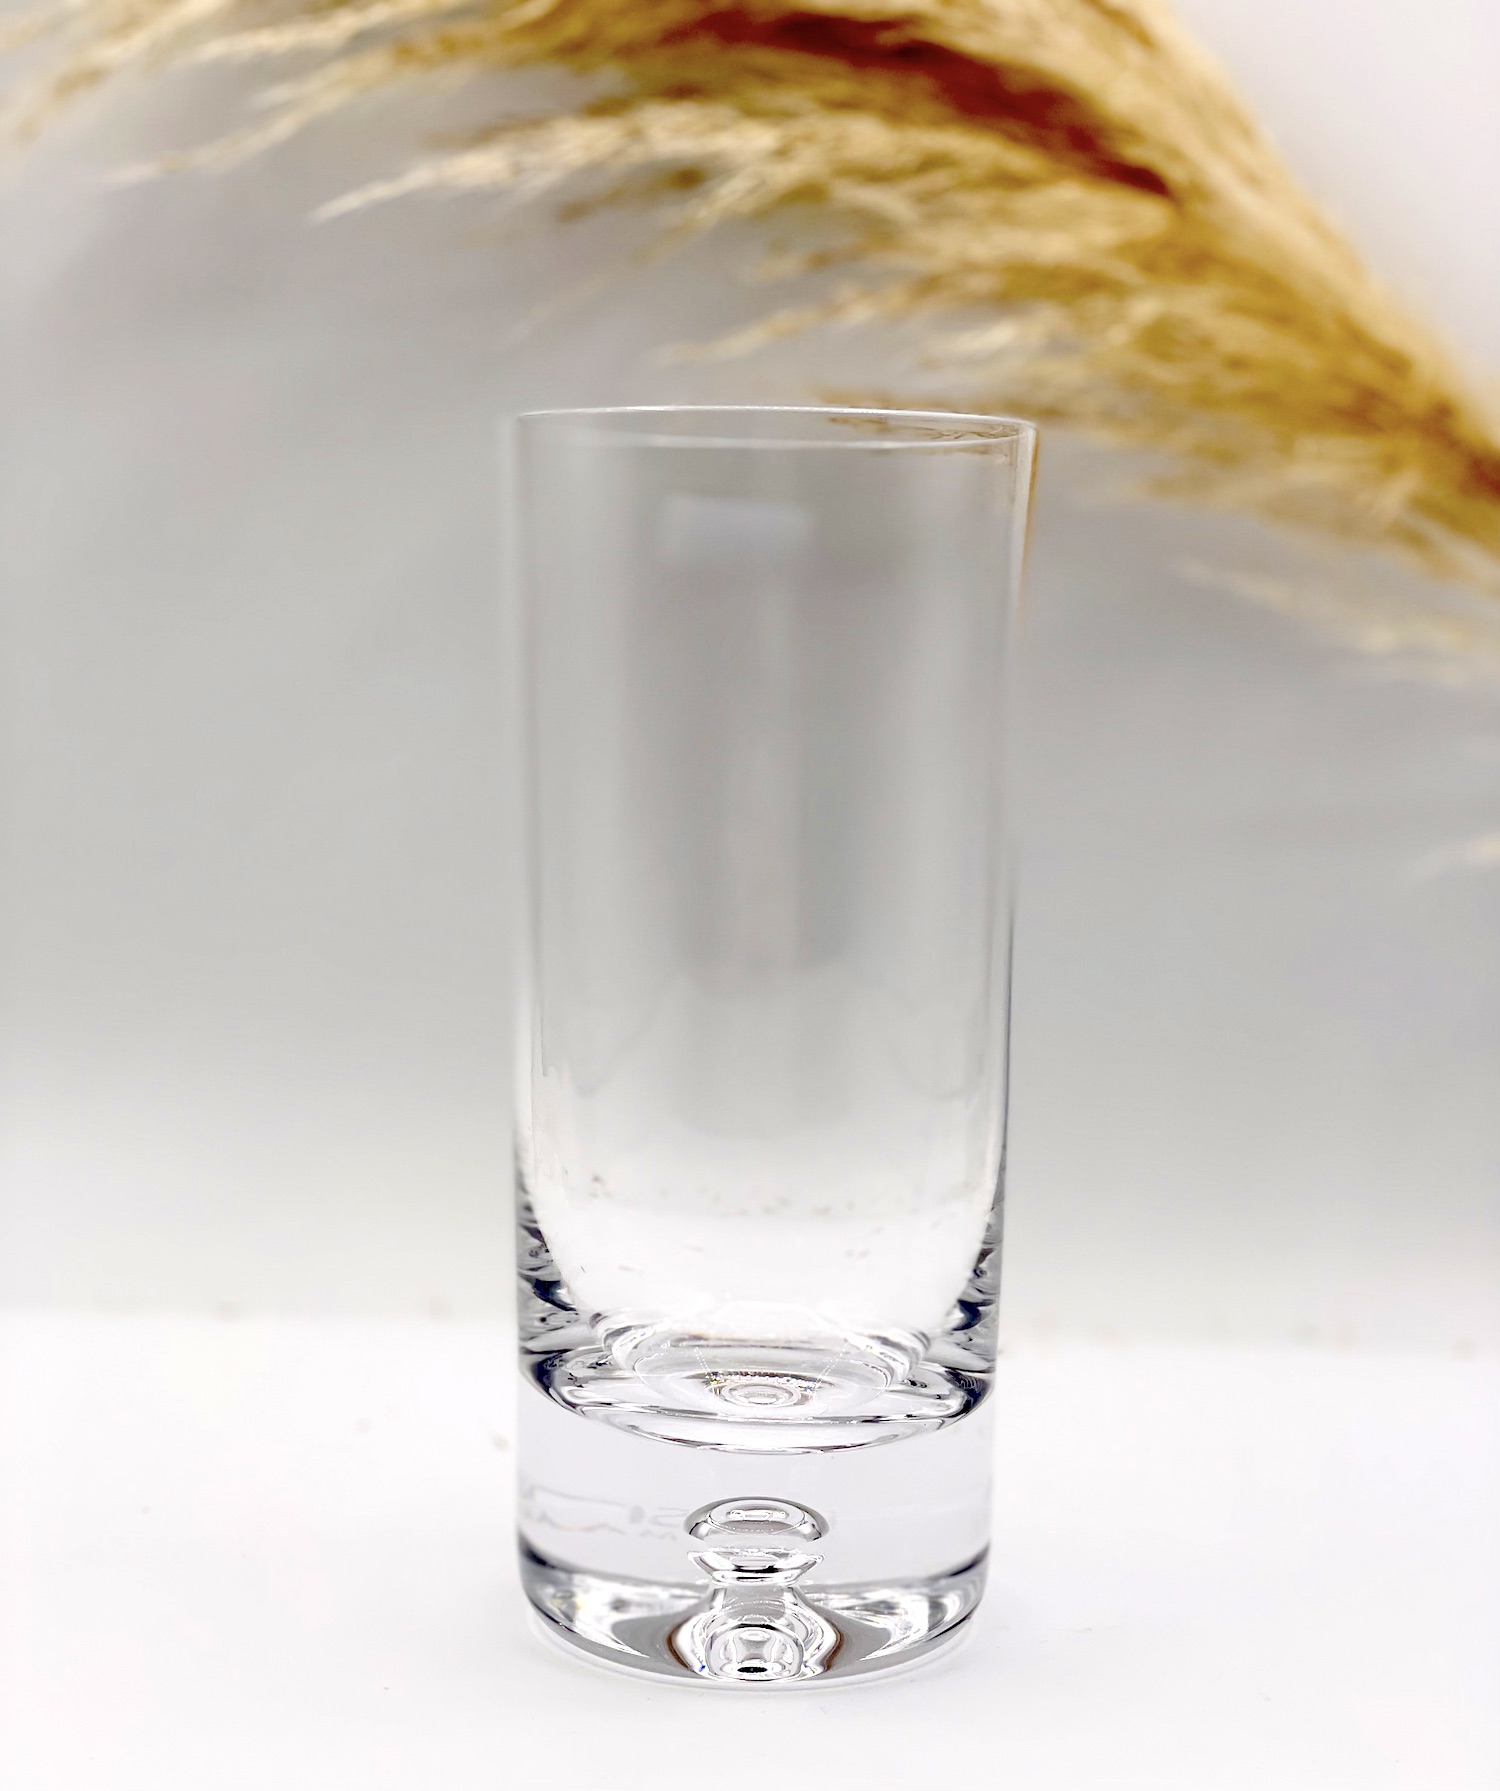 Verres à eau design - Impérial Cristal achat verres à eau